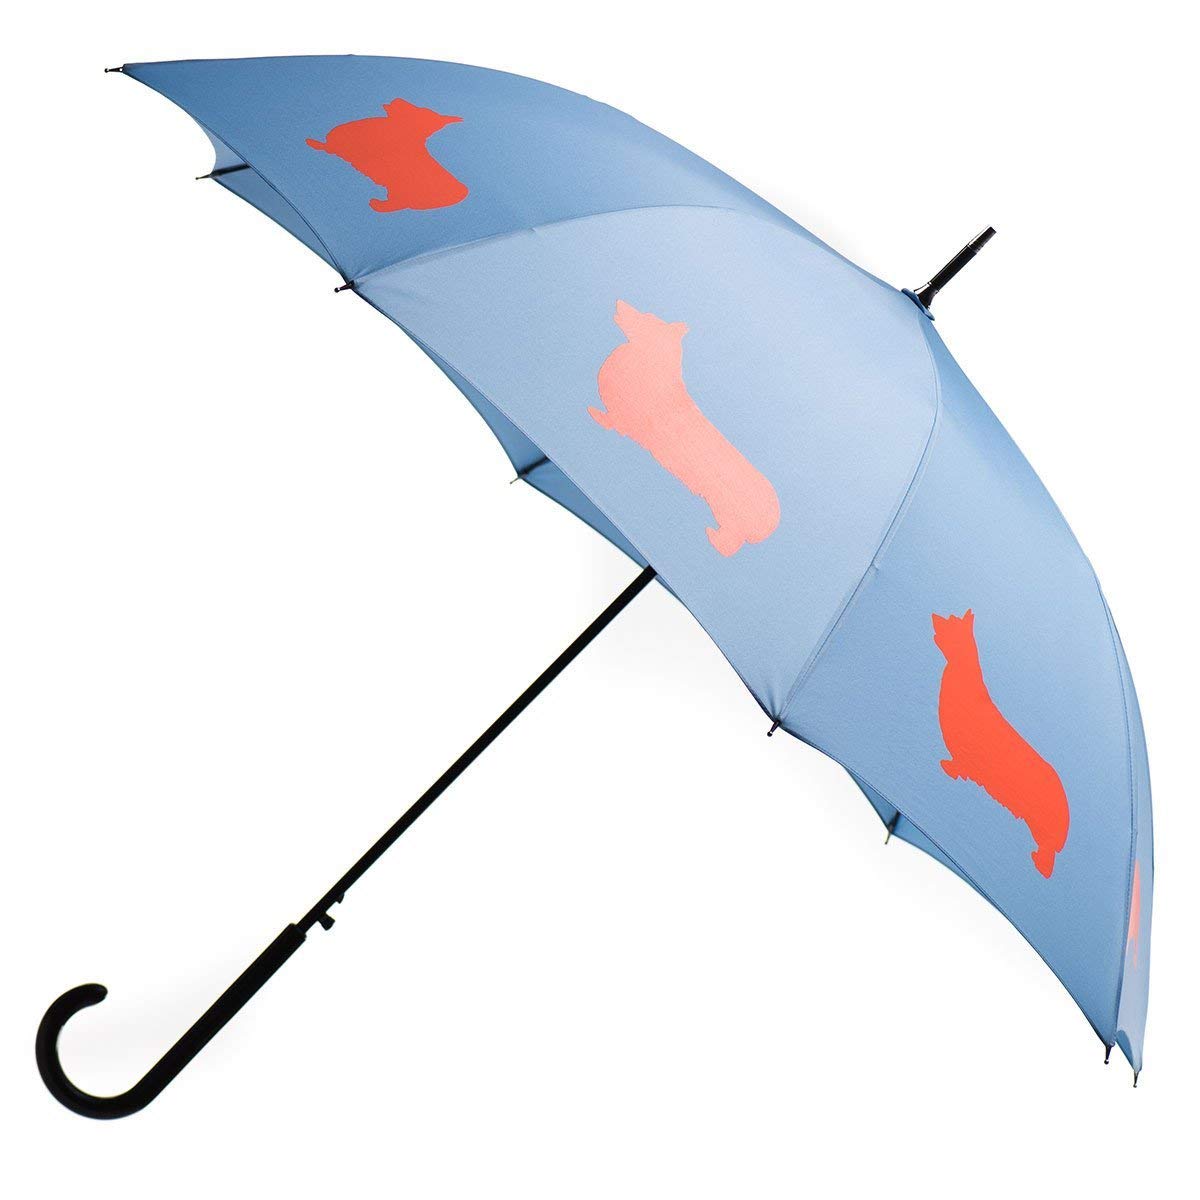 Blue umbrella with Welsh Corgi prints